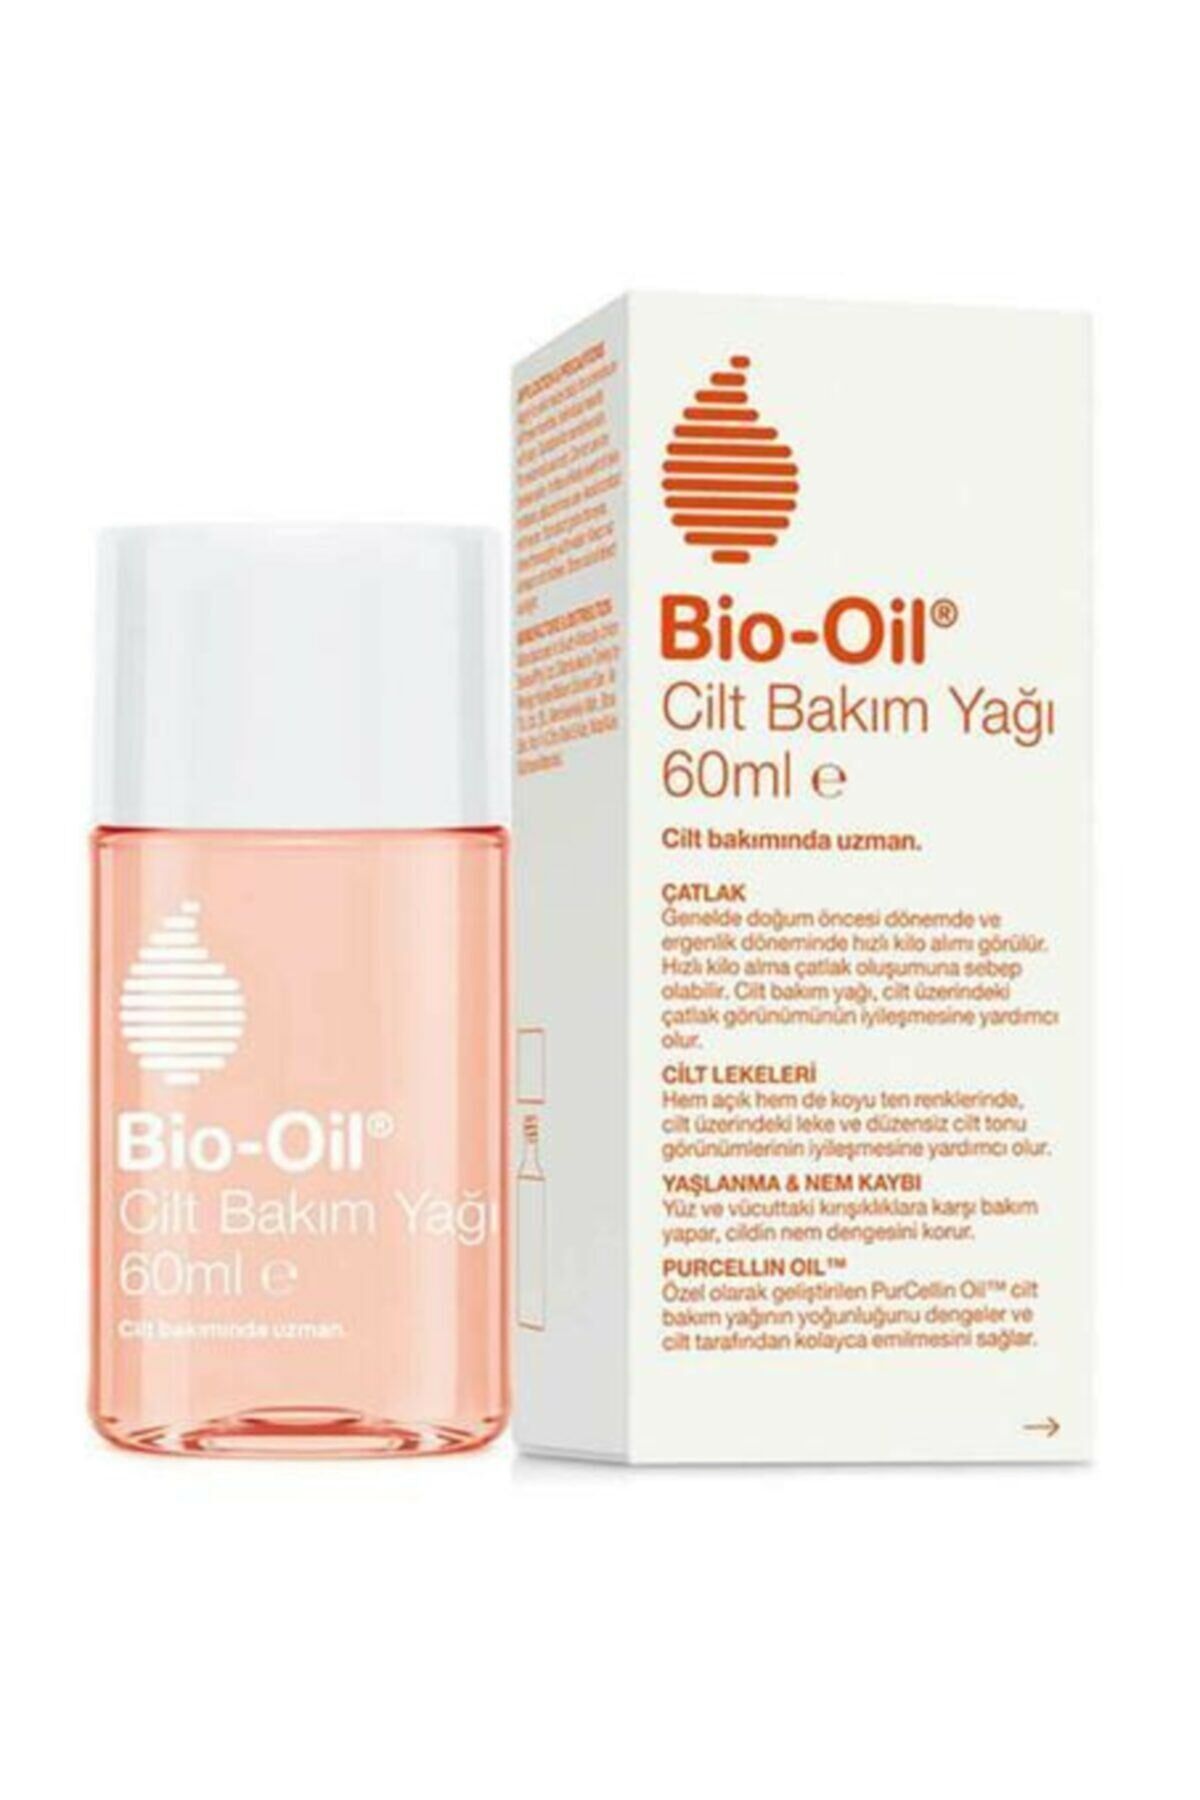 Bio-oil Cilt Bakım Yağı 60 ml